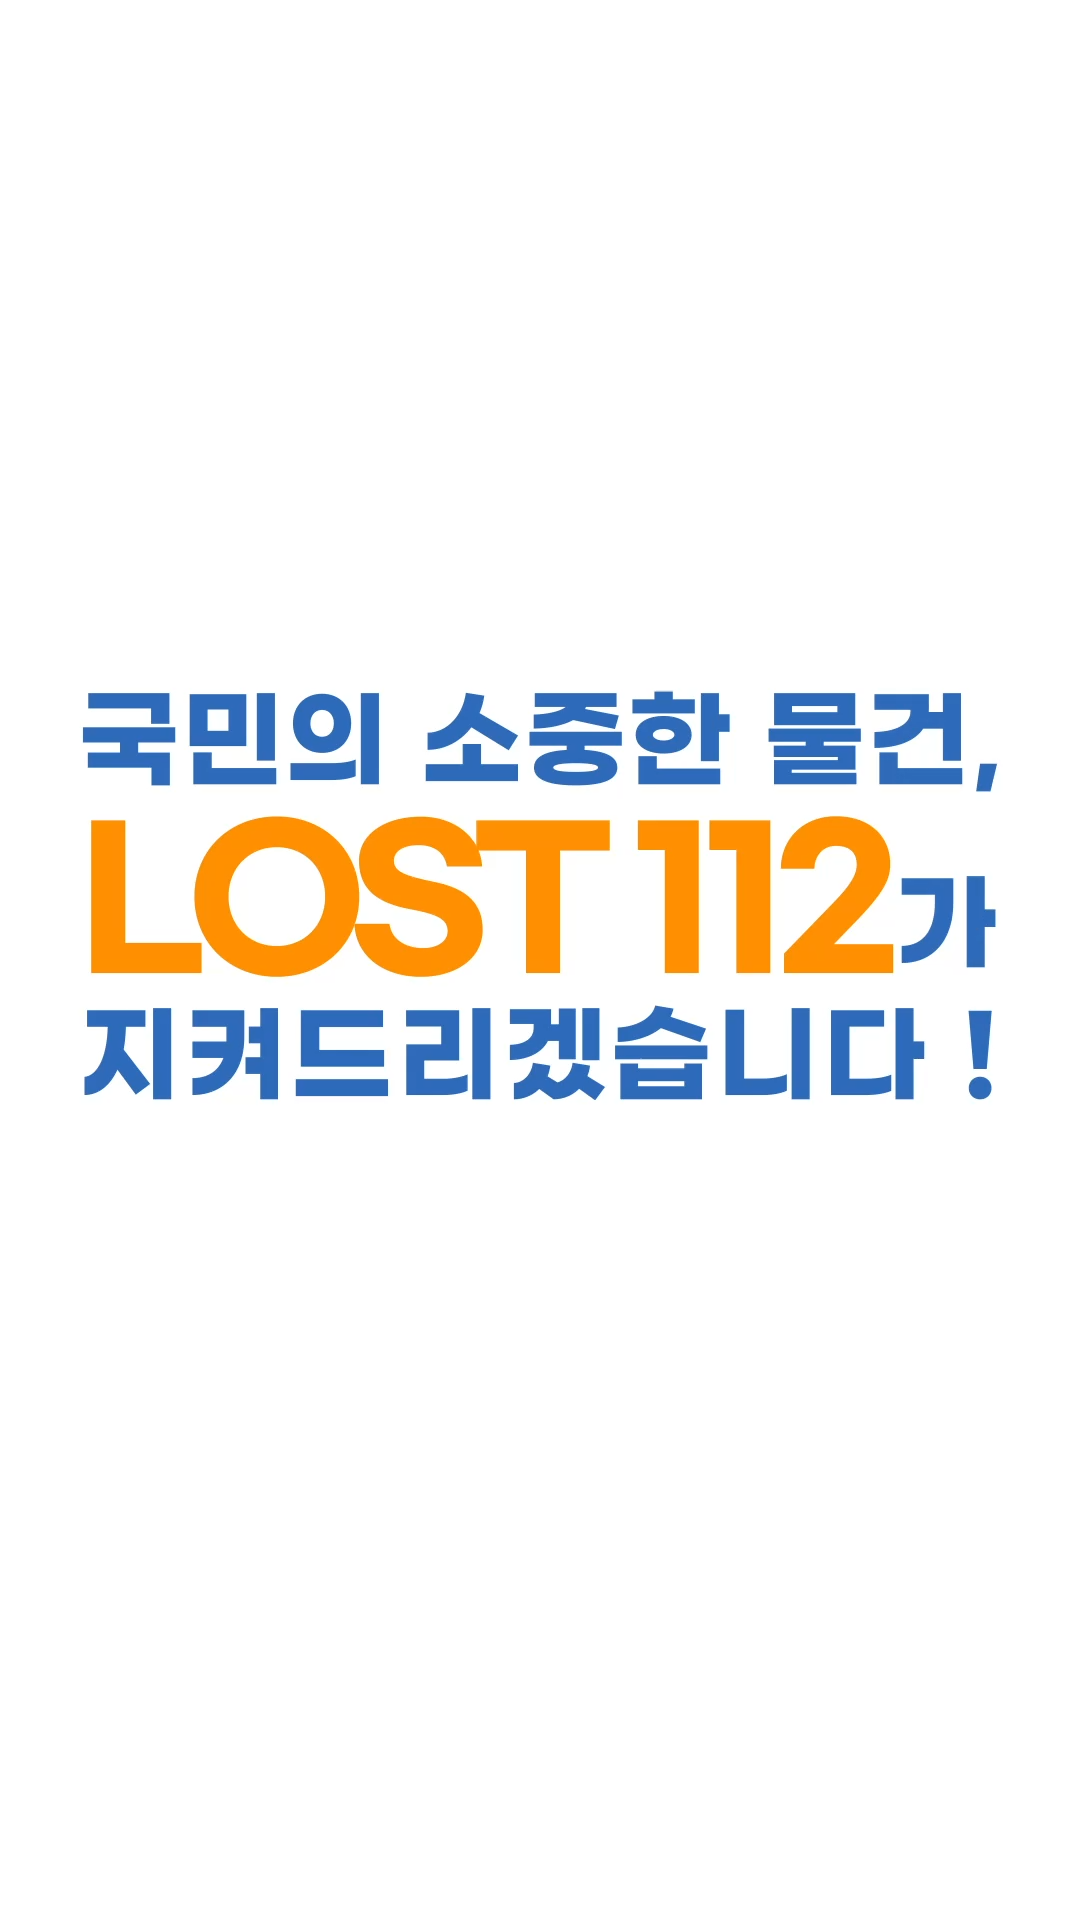 LOST 112